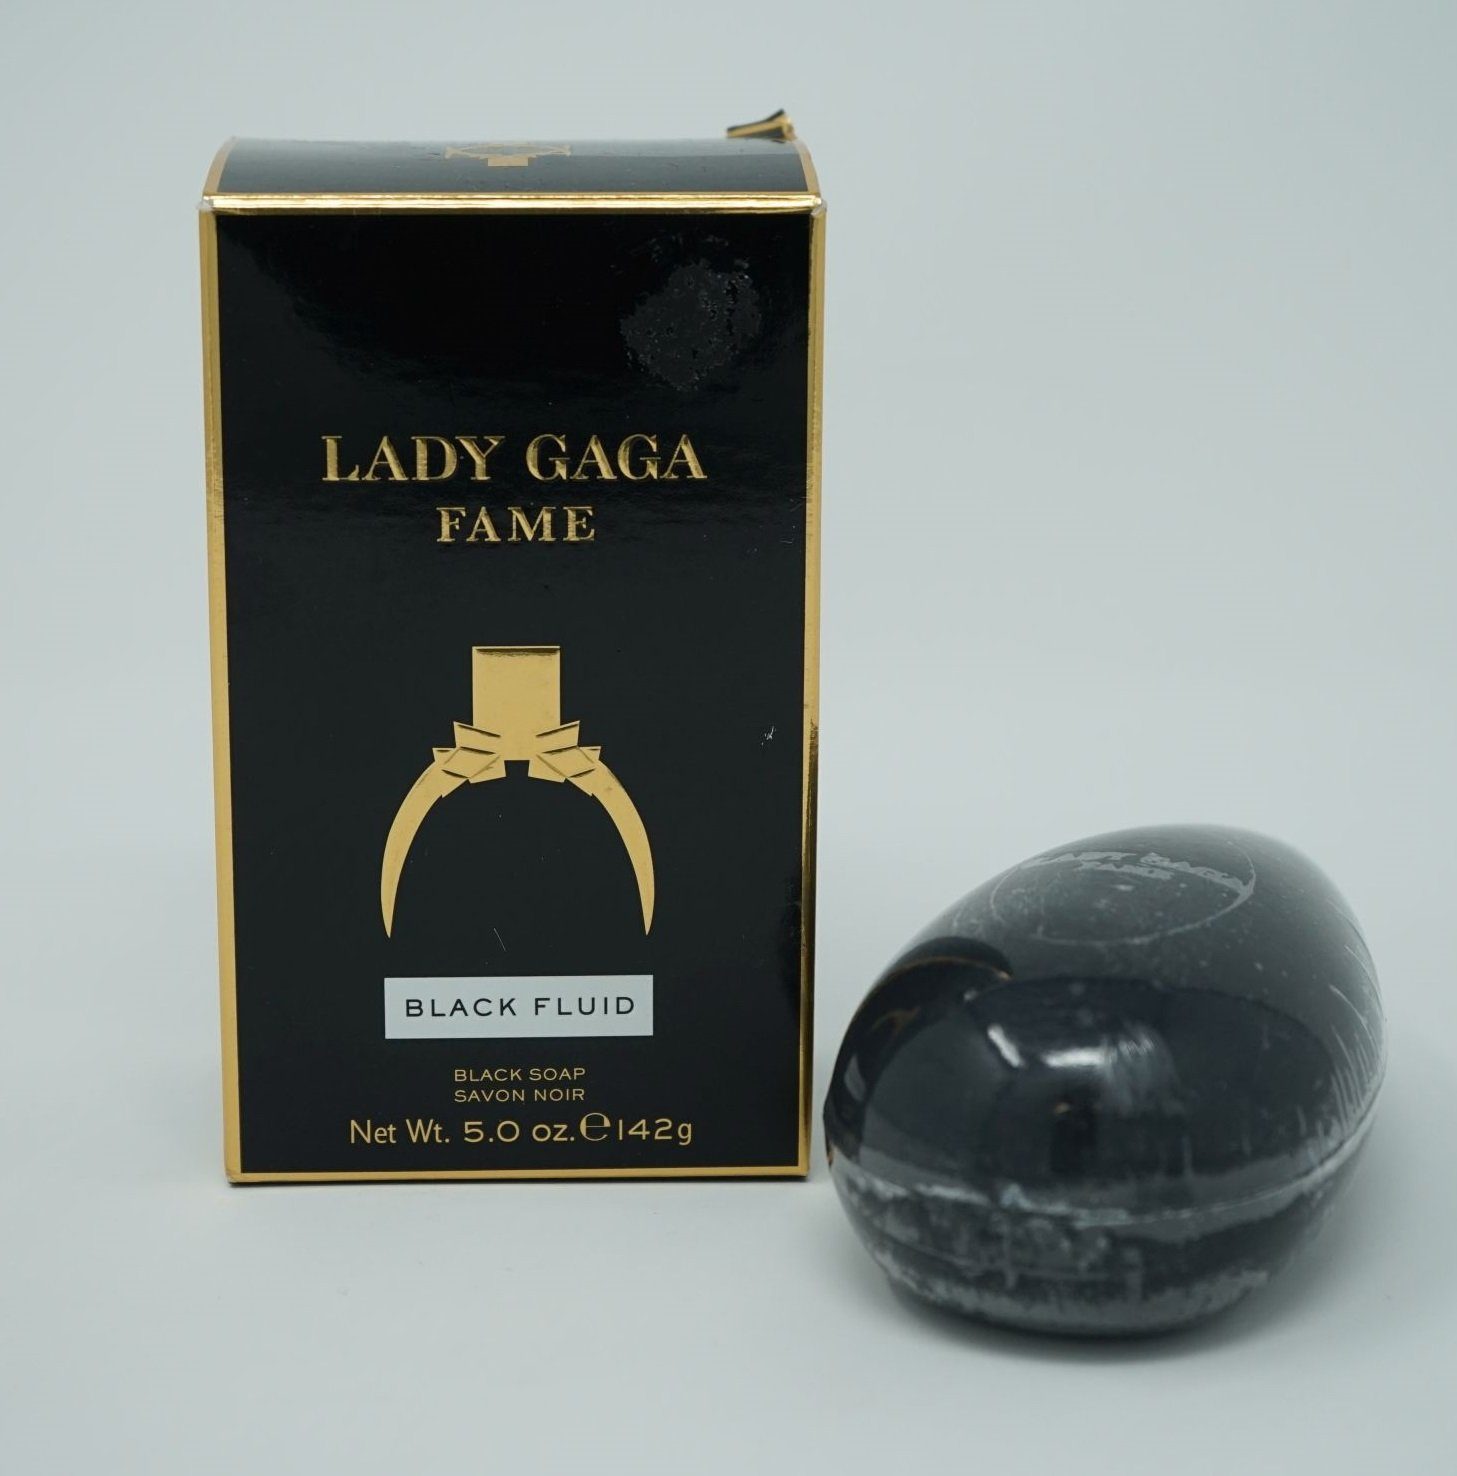 LG Handseife Lady Gaga Fame Black Fluid Savon noir /seife 42g